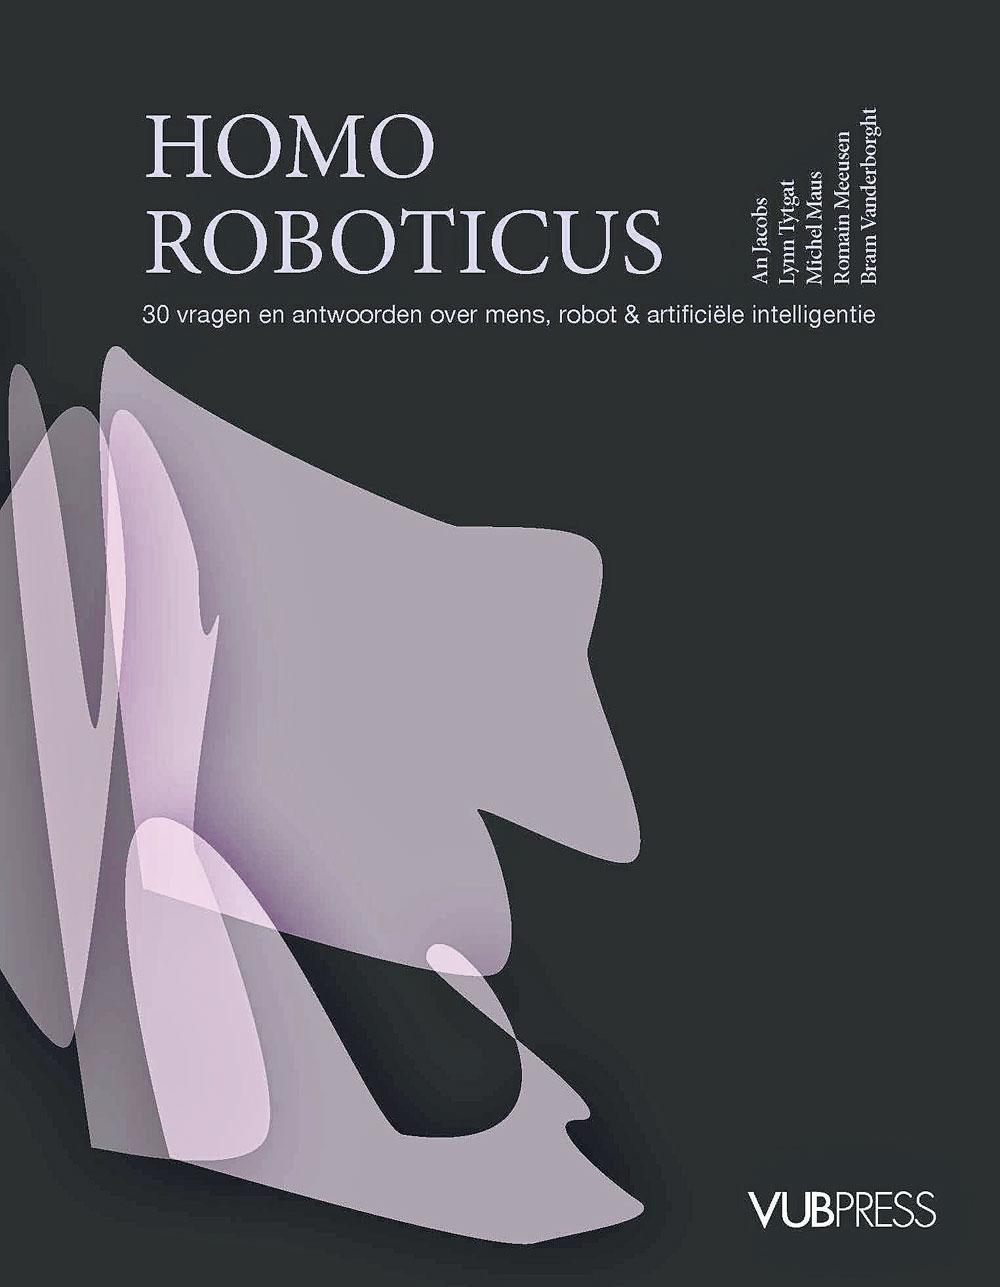 An Jacobs, Lynn Tytgat, Michel Maus, Romain Meeusen en Bram Vanderborght (red.), Homo Roboticus: 30 vragen en antwoorden over mens, robot & artificiële intelligentie, VUBPress, 296 blz., 34,95 euro.